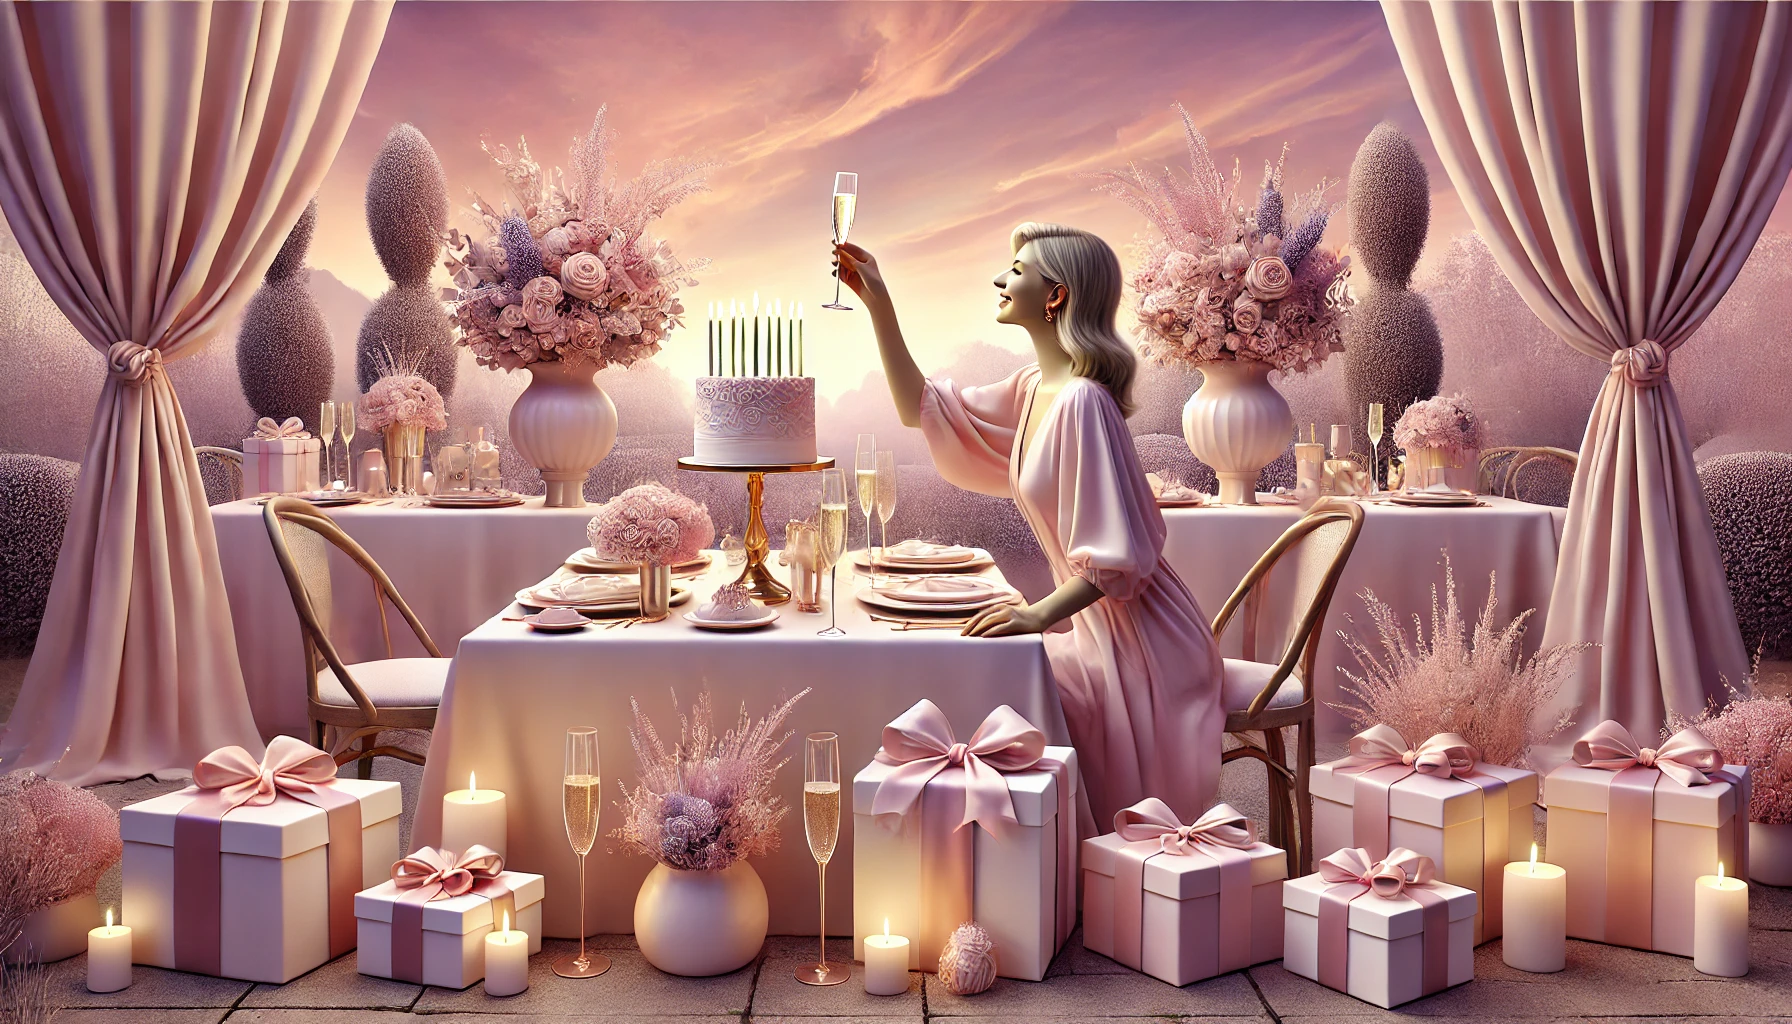 Życzenia urodzinowe dla kobiety - sekrety, które sprawią, że jej oczy zalśnią szczęściem